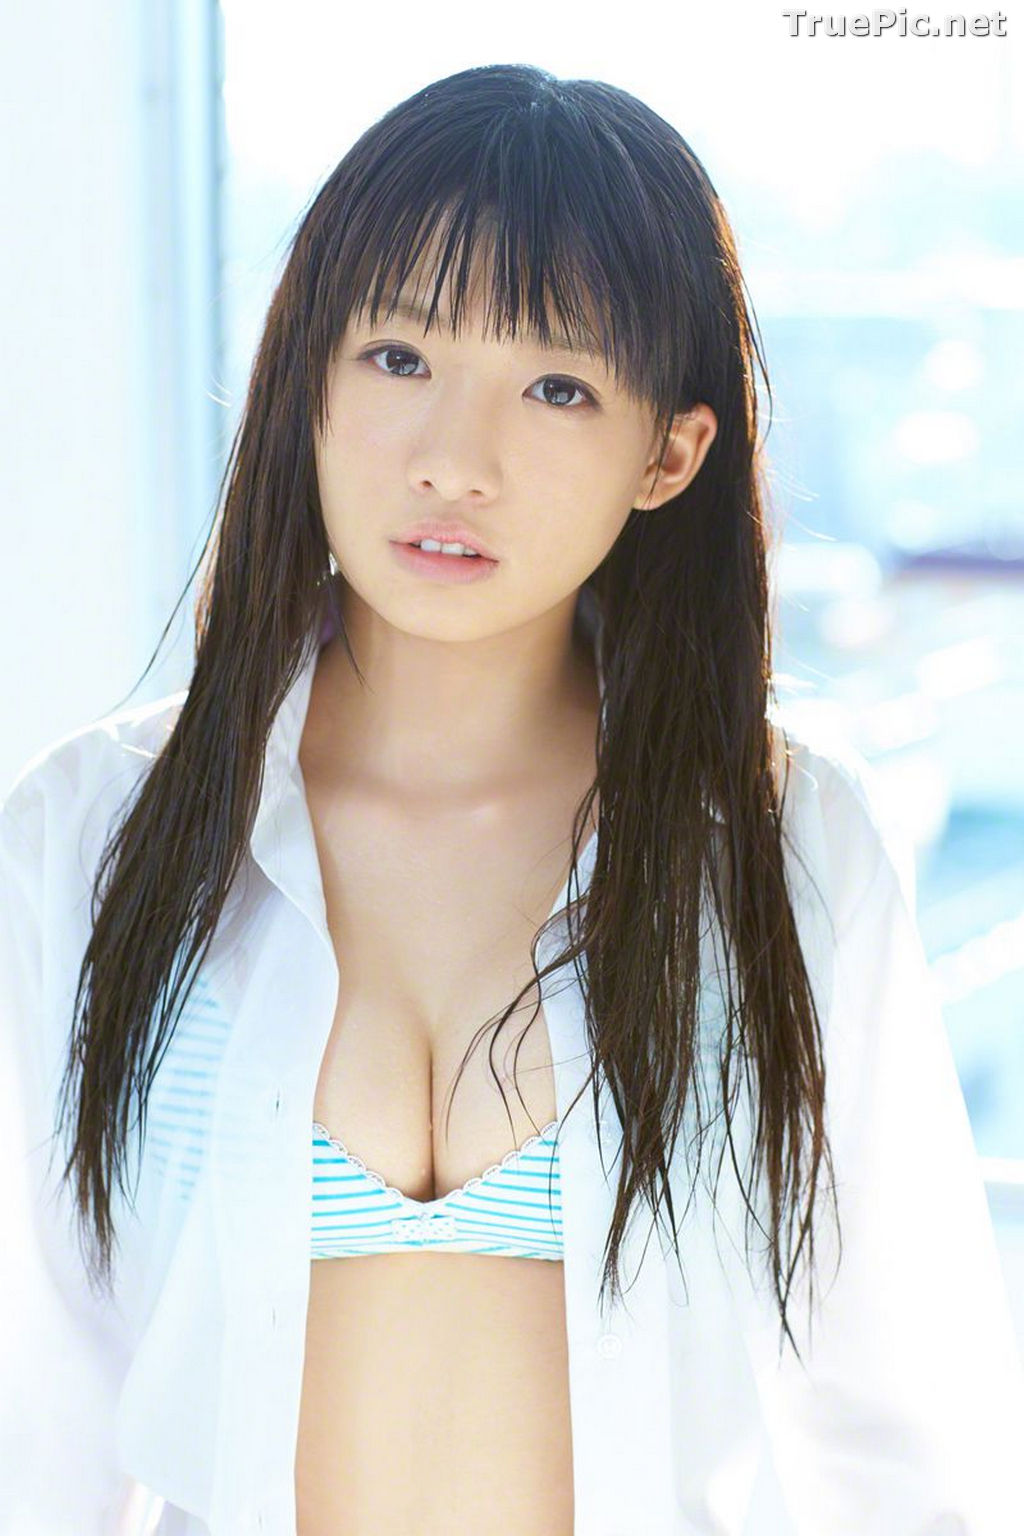 Image Wanibooks No.133 - Japanese Model and Singer - Hikari Shiina - TruePic.net - Picture-99